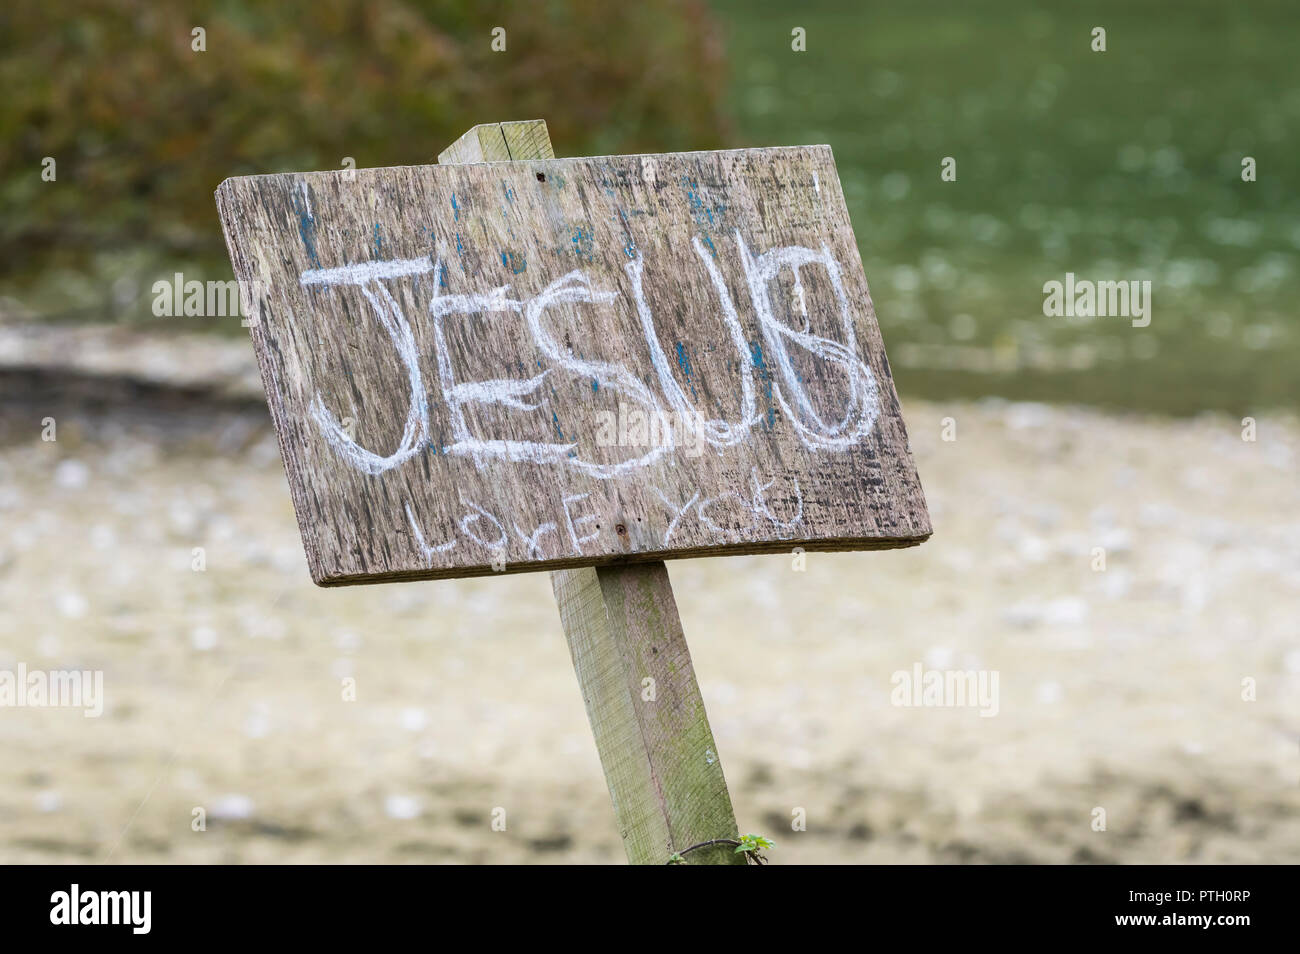 Segno esterno con graffiti dicendo "Gesù vi ama", un messaggio religeous per promuovere la fede cristiana nel Regno Unito. Foto Stock